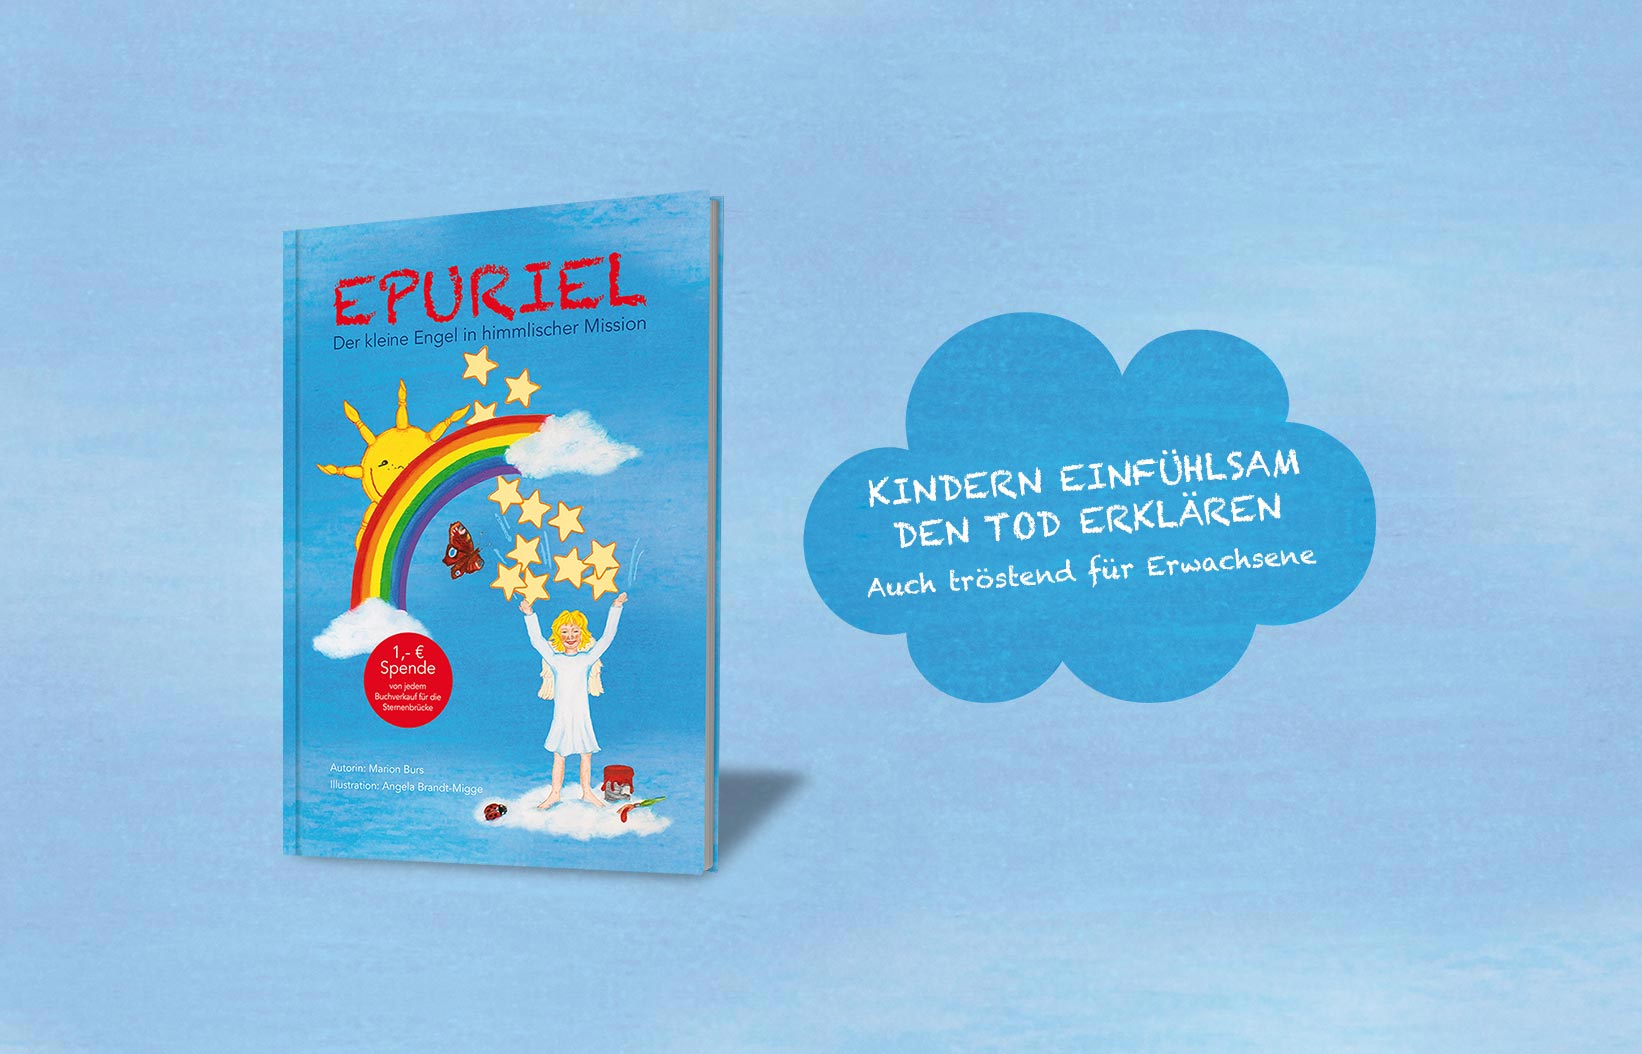 Kinderbuch Epuriel zum Thema Kindern den Tod erklären